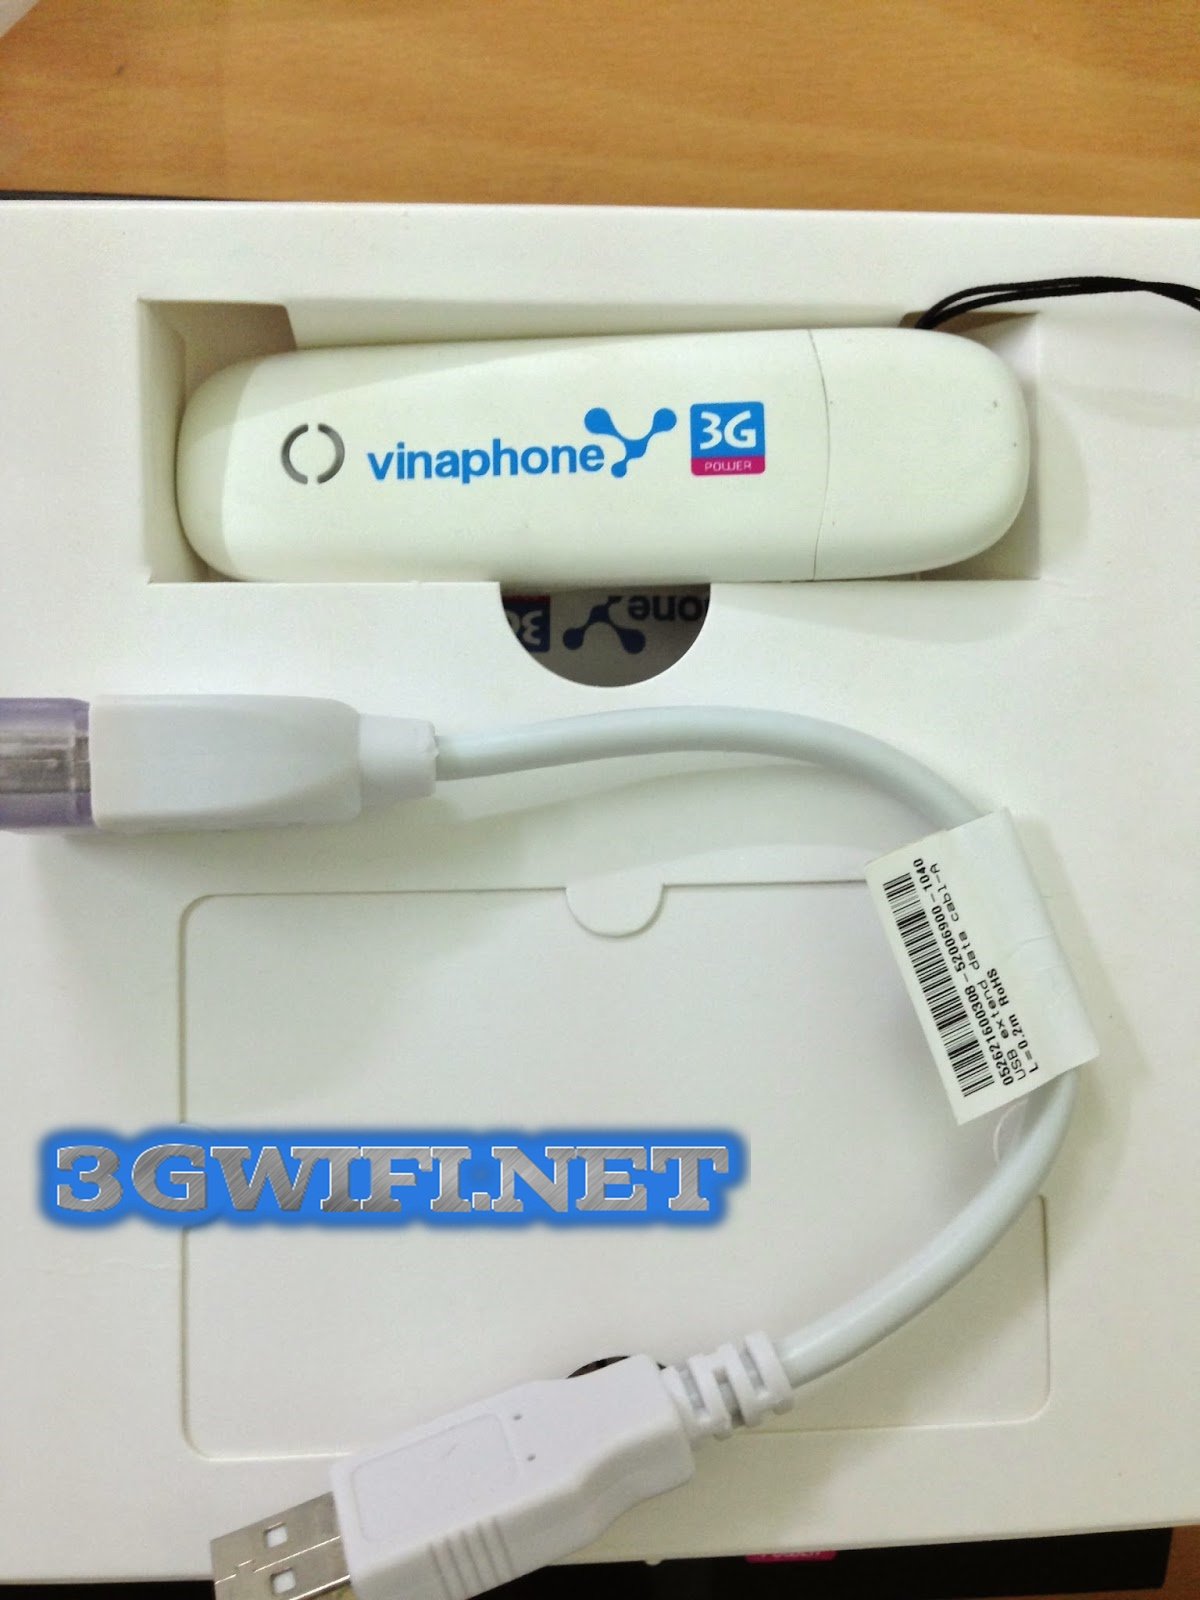 USB 3G Vinaphone Ezcom E173u-1 nhỏ gọn như chiếc USB thường